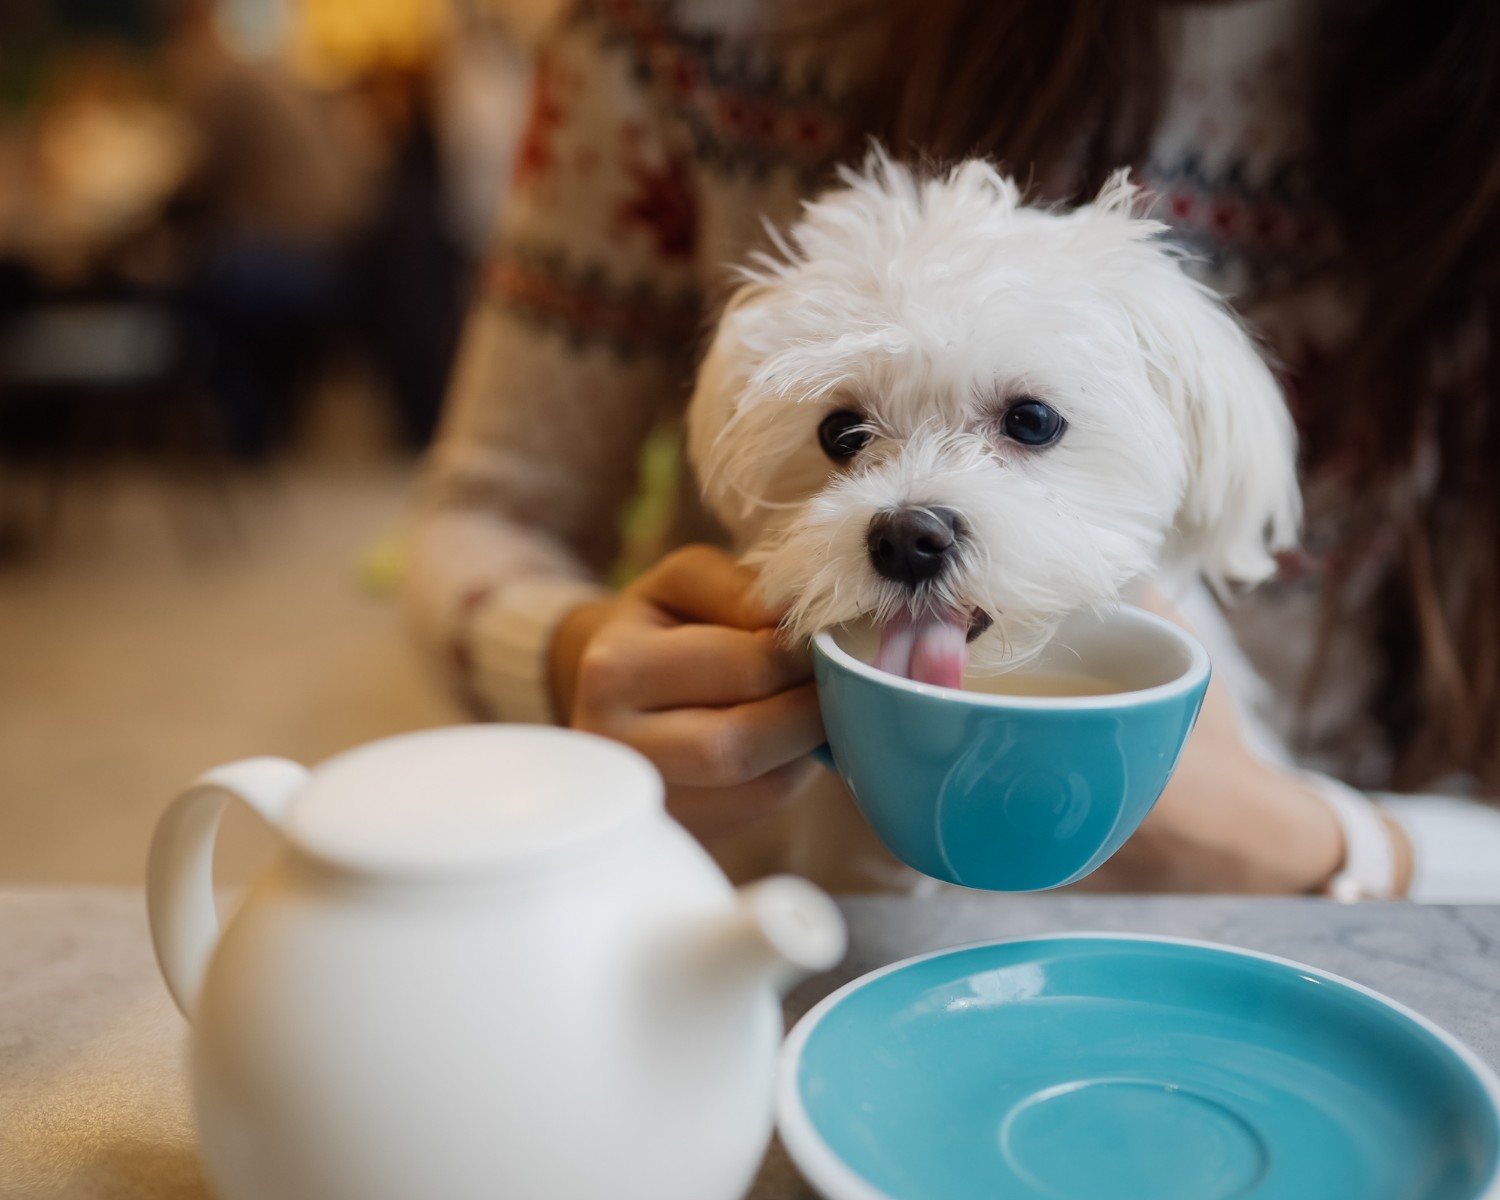 Se notar que seu animal tomou café, procure um médico veterinário antes mesmo de apresentar sintomas  (Foto: Canva / Creative Commoms)